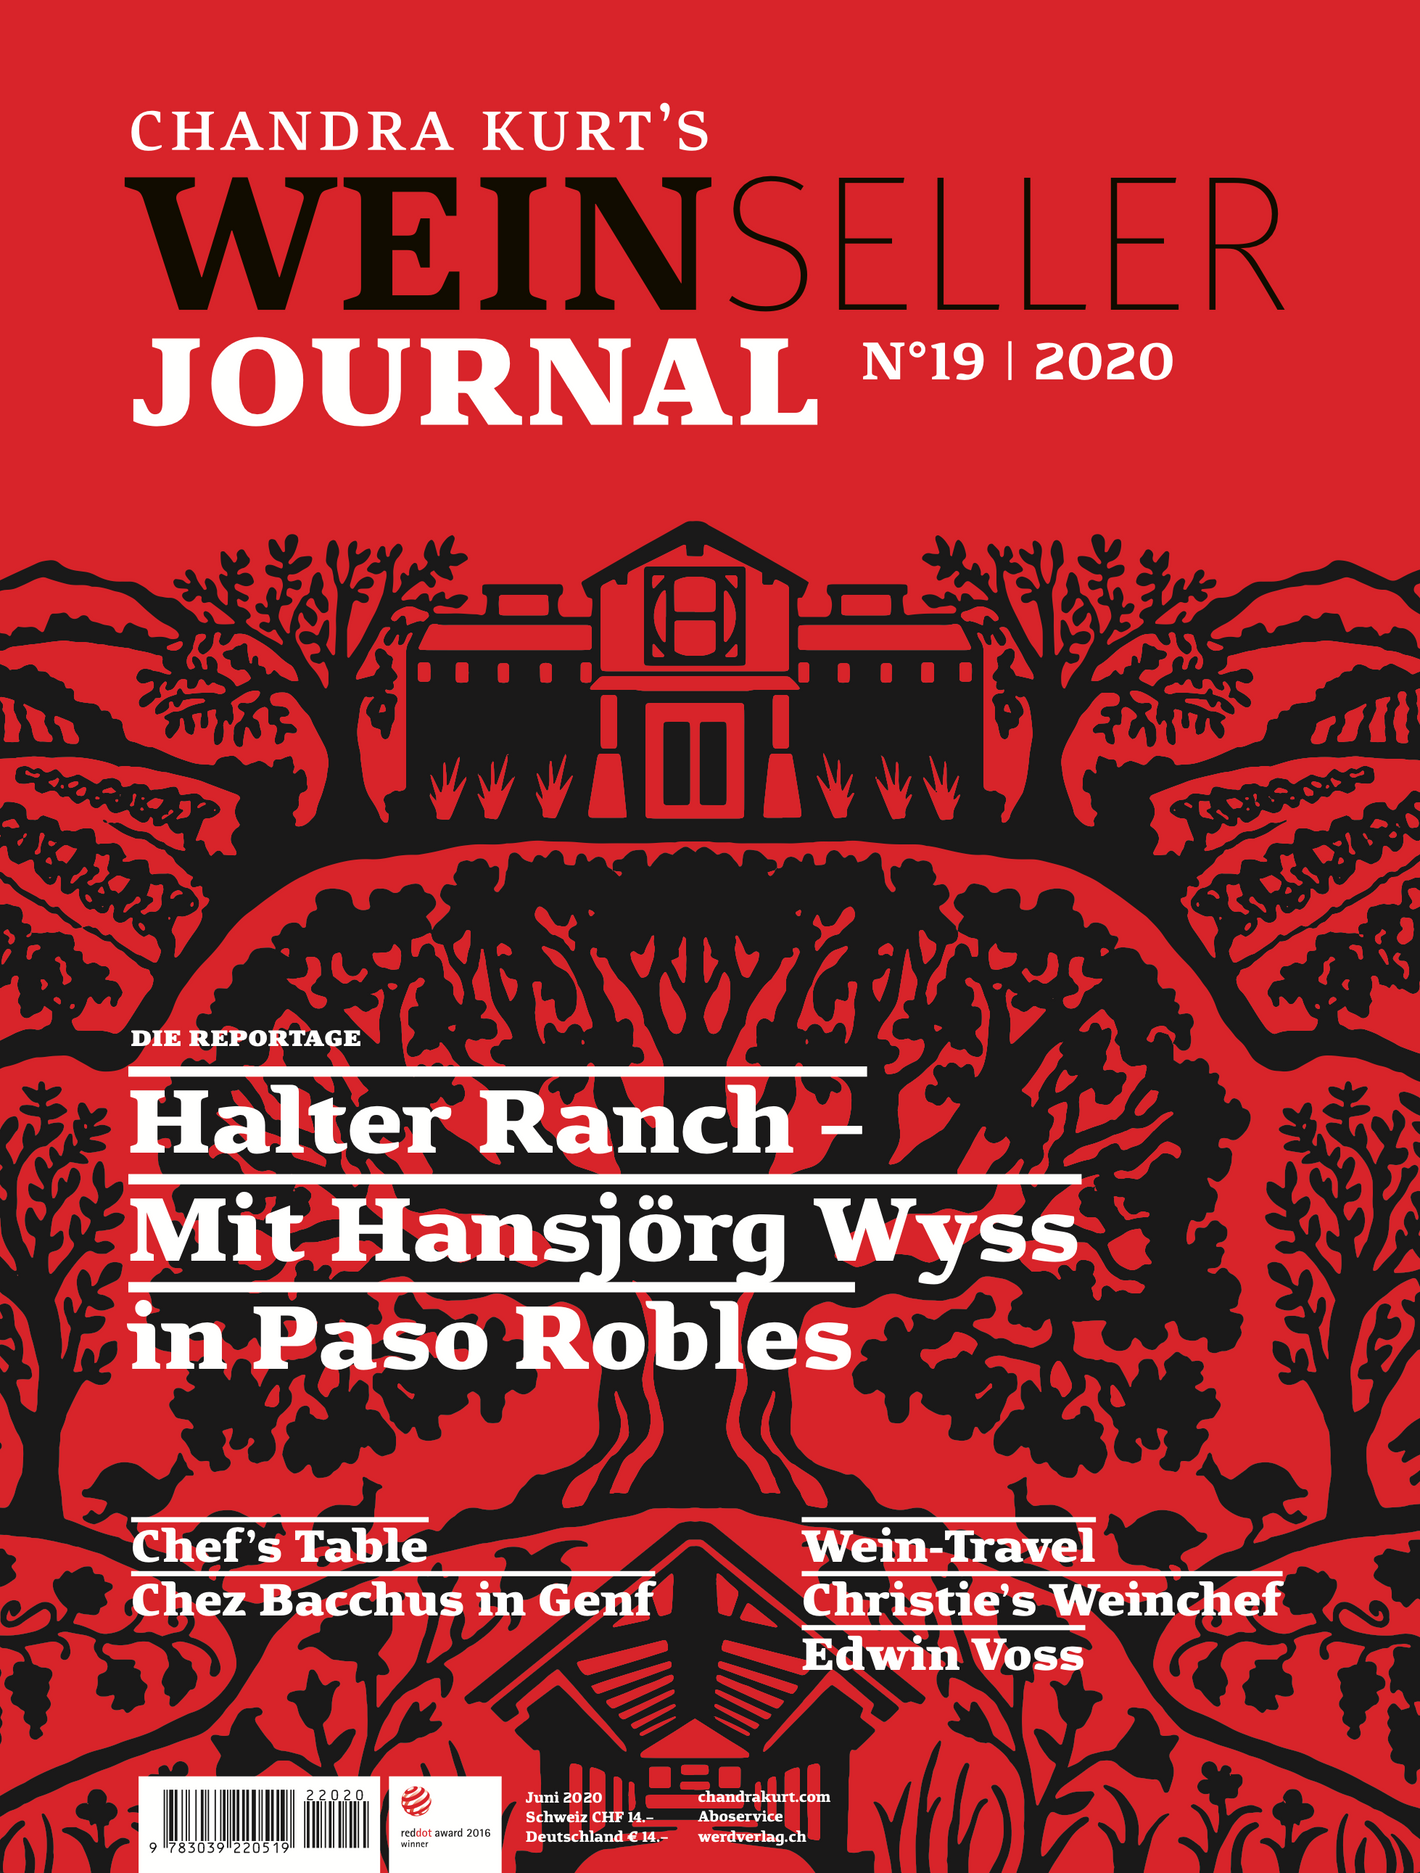 Weinseller Journal 19/20 - WEBER VERLAG